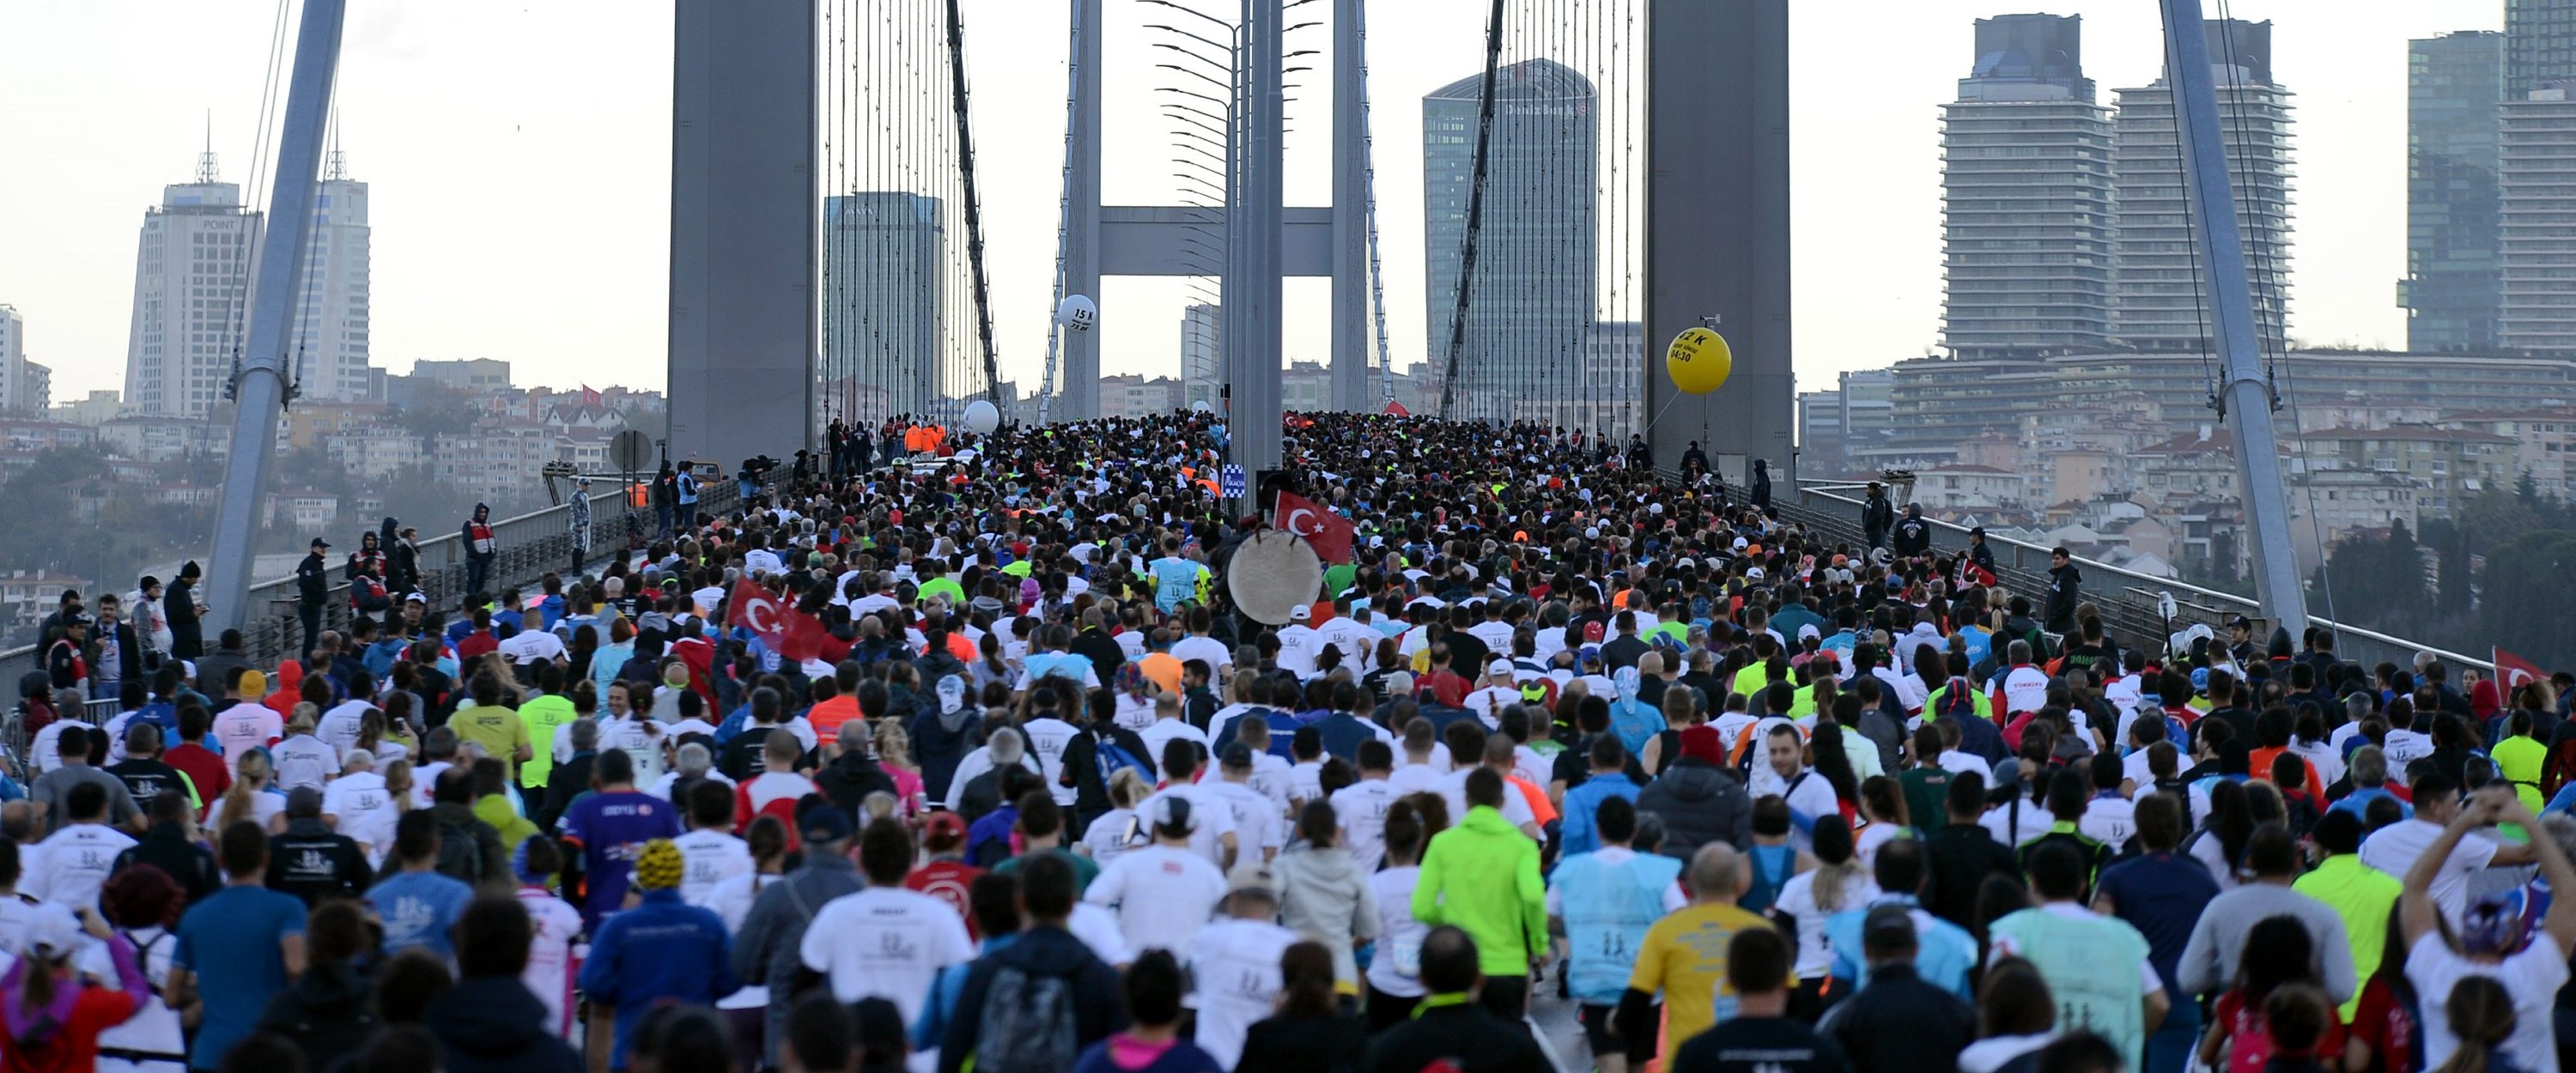 İstanbul Maratonuna nasıl hazırlanmalı?